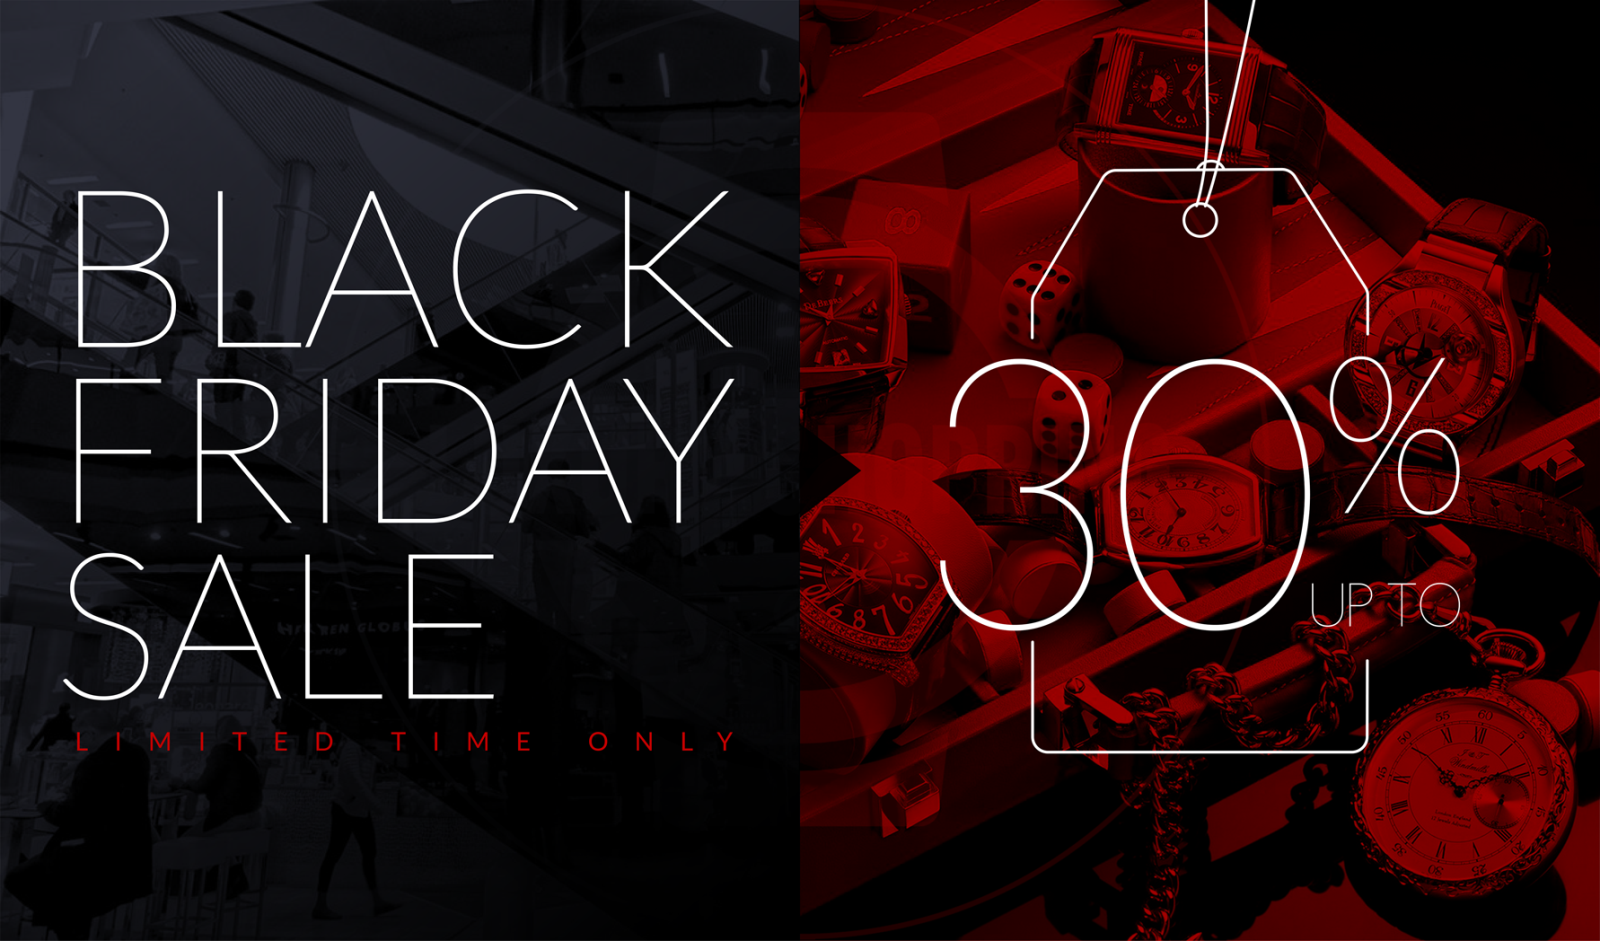 BLACK Friday 2019 - Giảm giá đến 30% tất cả các mẫu đồng hồ  BANNER-3